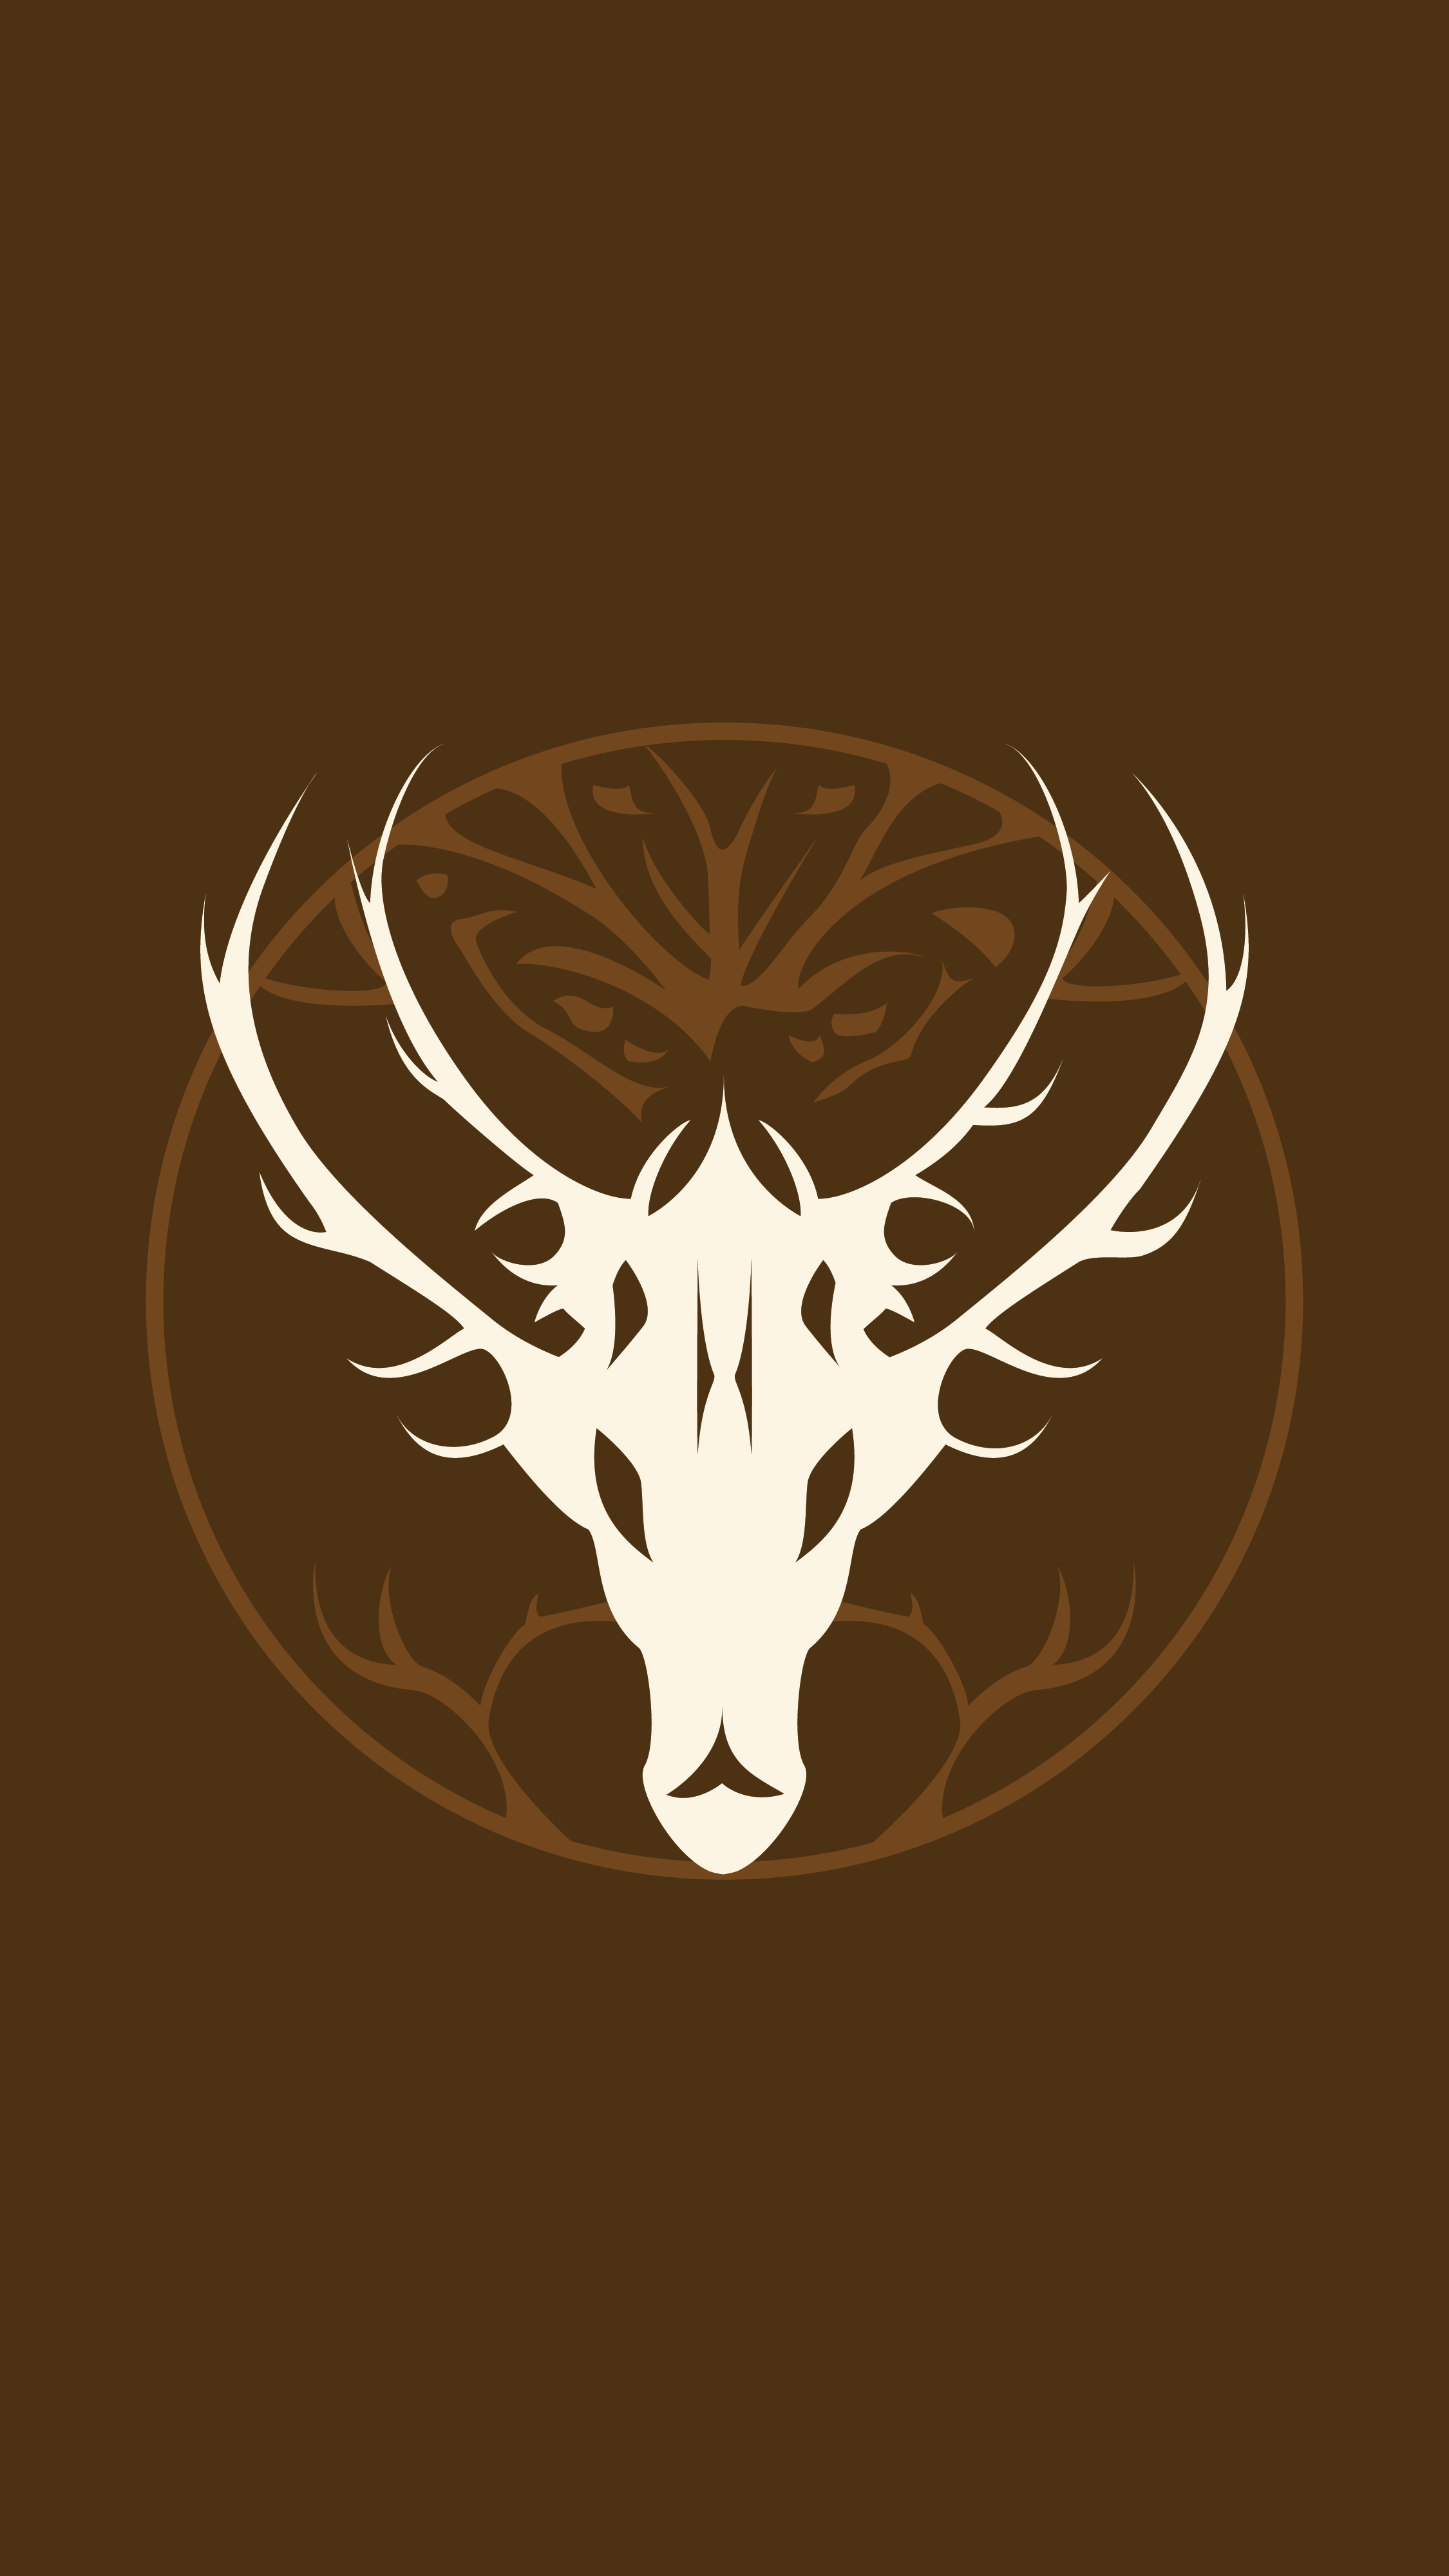 emblem wallpaper (mobile and desktop)